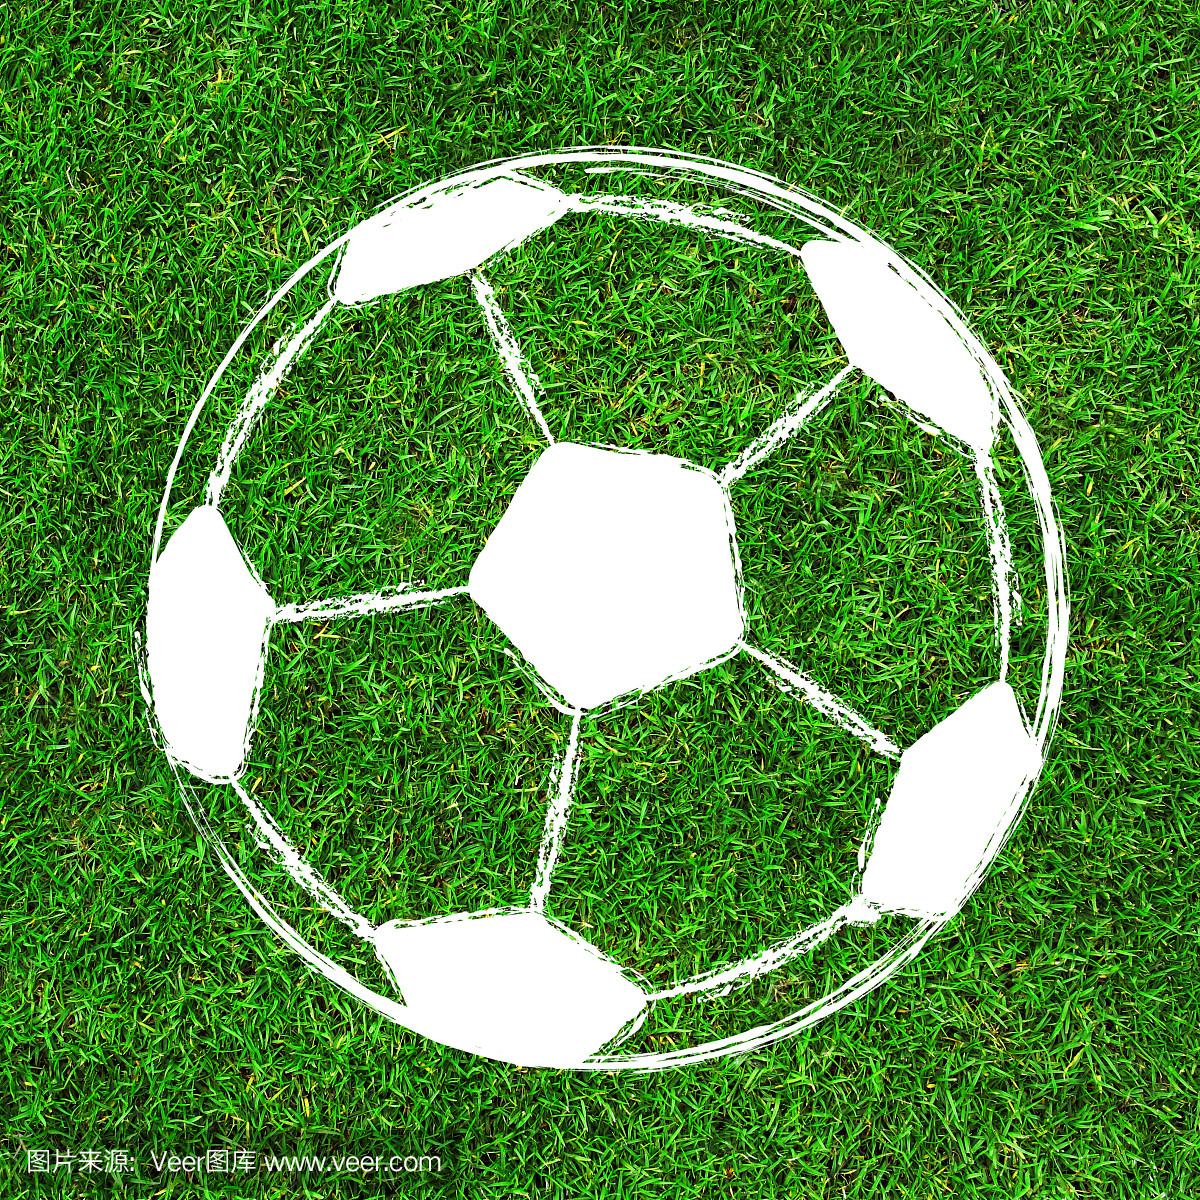 足球\/足球绘画设计在绿色的田野背景